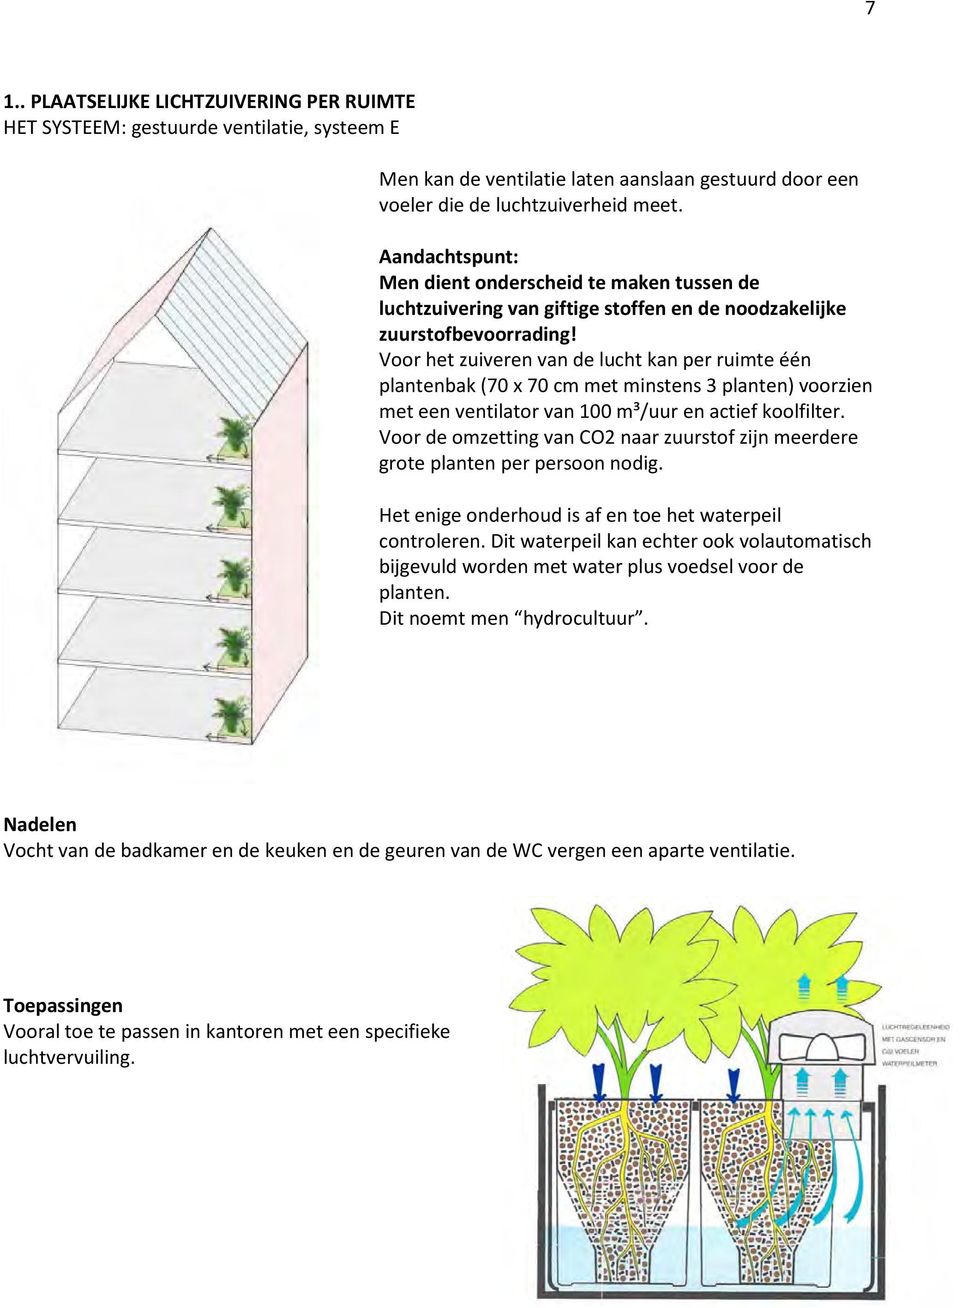 Voor het zuiveren van de lucht kan per ruimte één plantenbak (70 x 70 cm met minstens 3 planten) voorzien met een ventilator van 100 m³/uur en actief koolfilter.